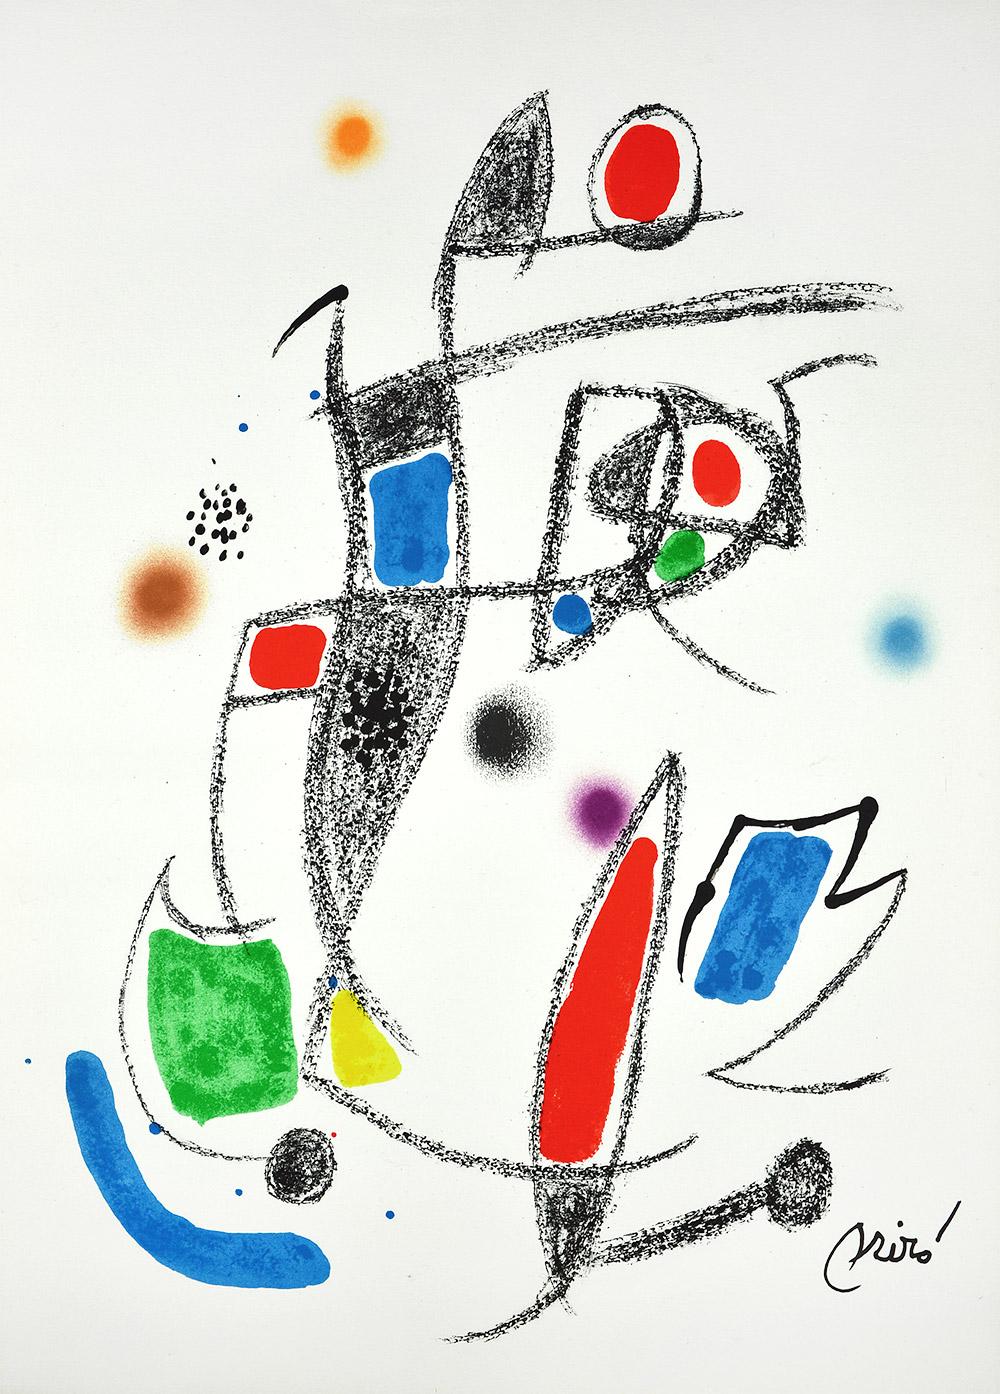 Joan Miró - Maravillas con variaciones acrósticas en el jardín de Miró X
Date de création : 1975
Support : Lithographie sur papier Gvarro
Édition : 1500
Taille : 49,5 x 35,5 cm
Condit : En très bon état et jamais encadré
Observations :
Lithographie